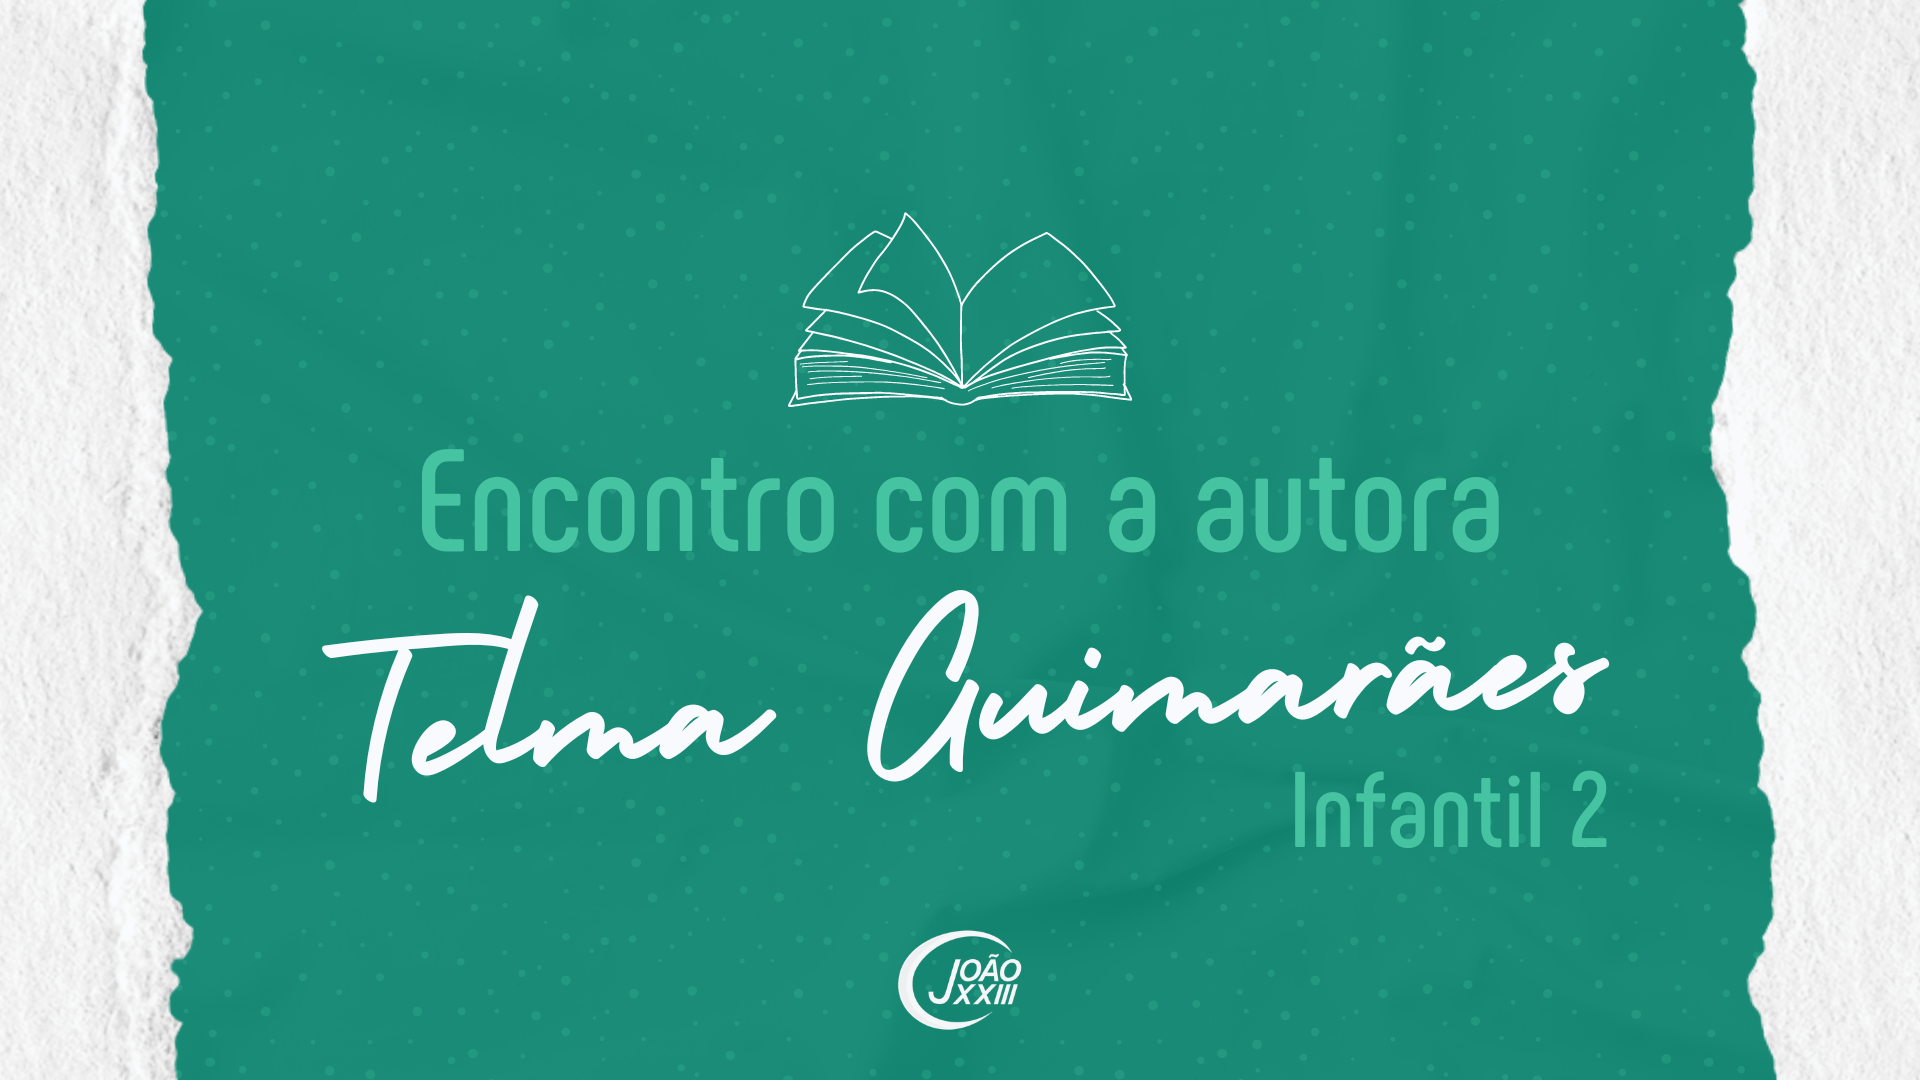 You are currently viewing Encontro com a autora Telma Guimarães